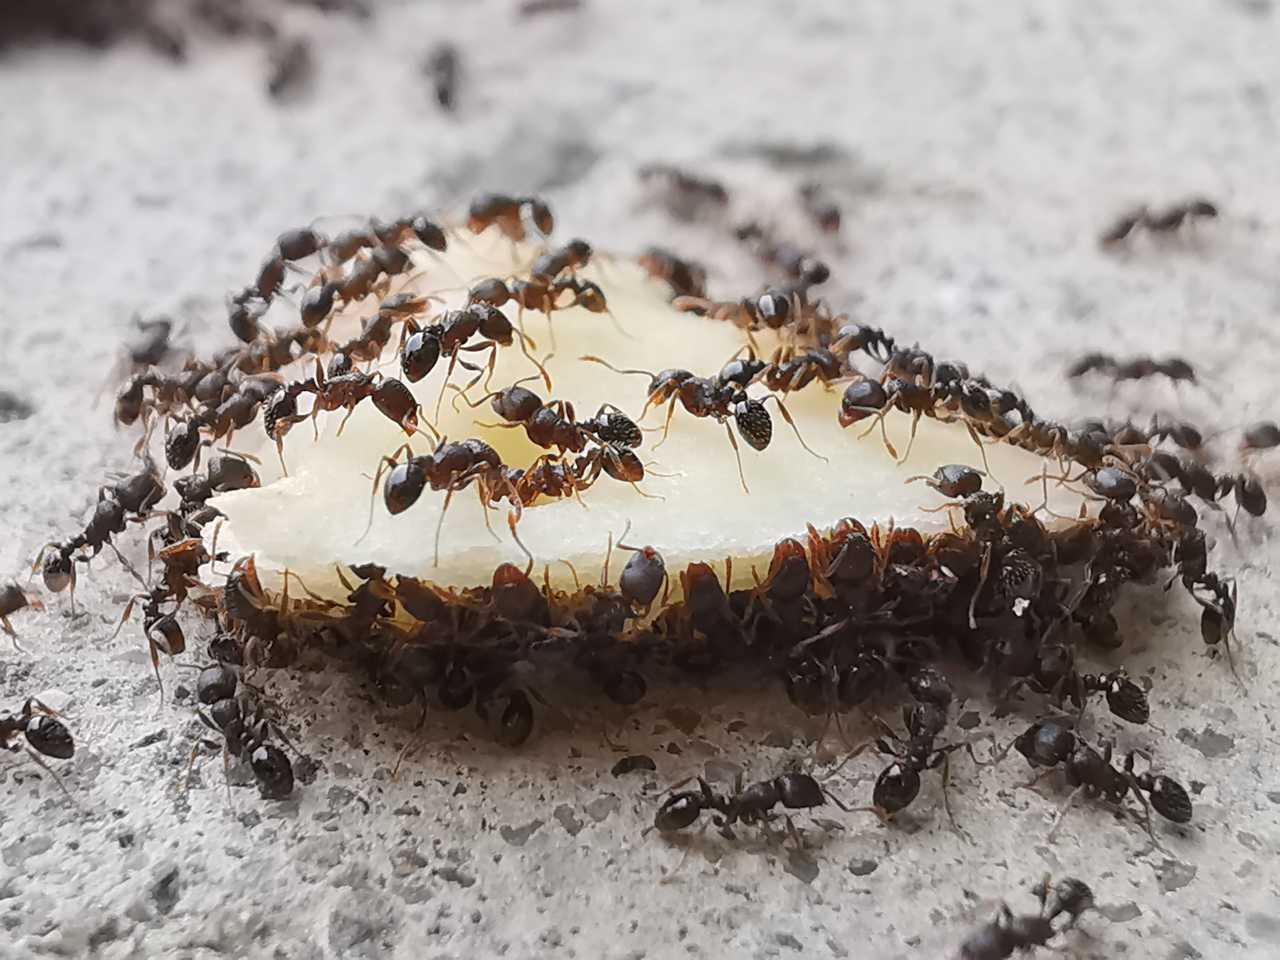 蚂蚁搬食物的图片图片